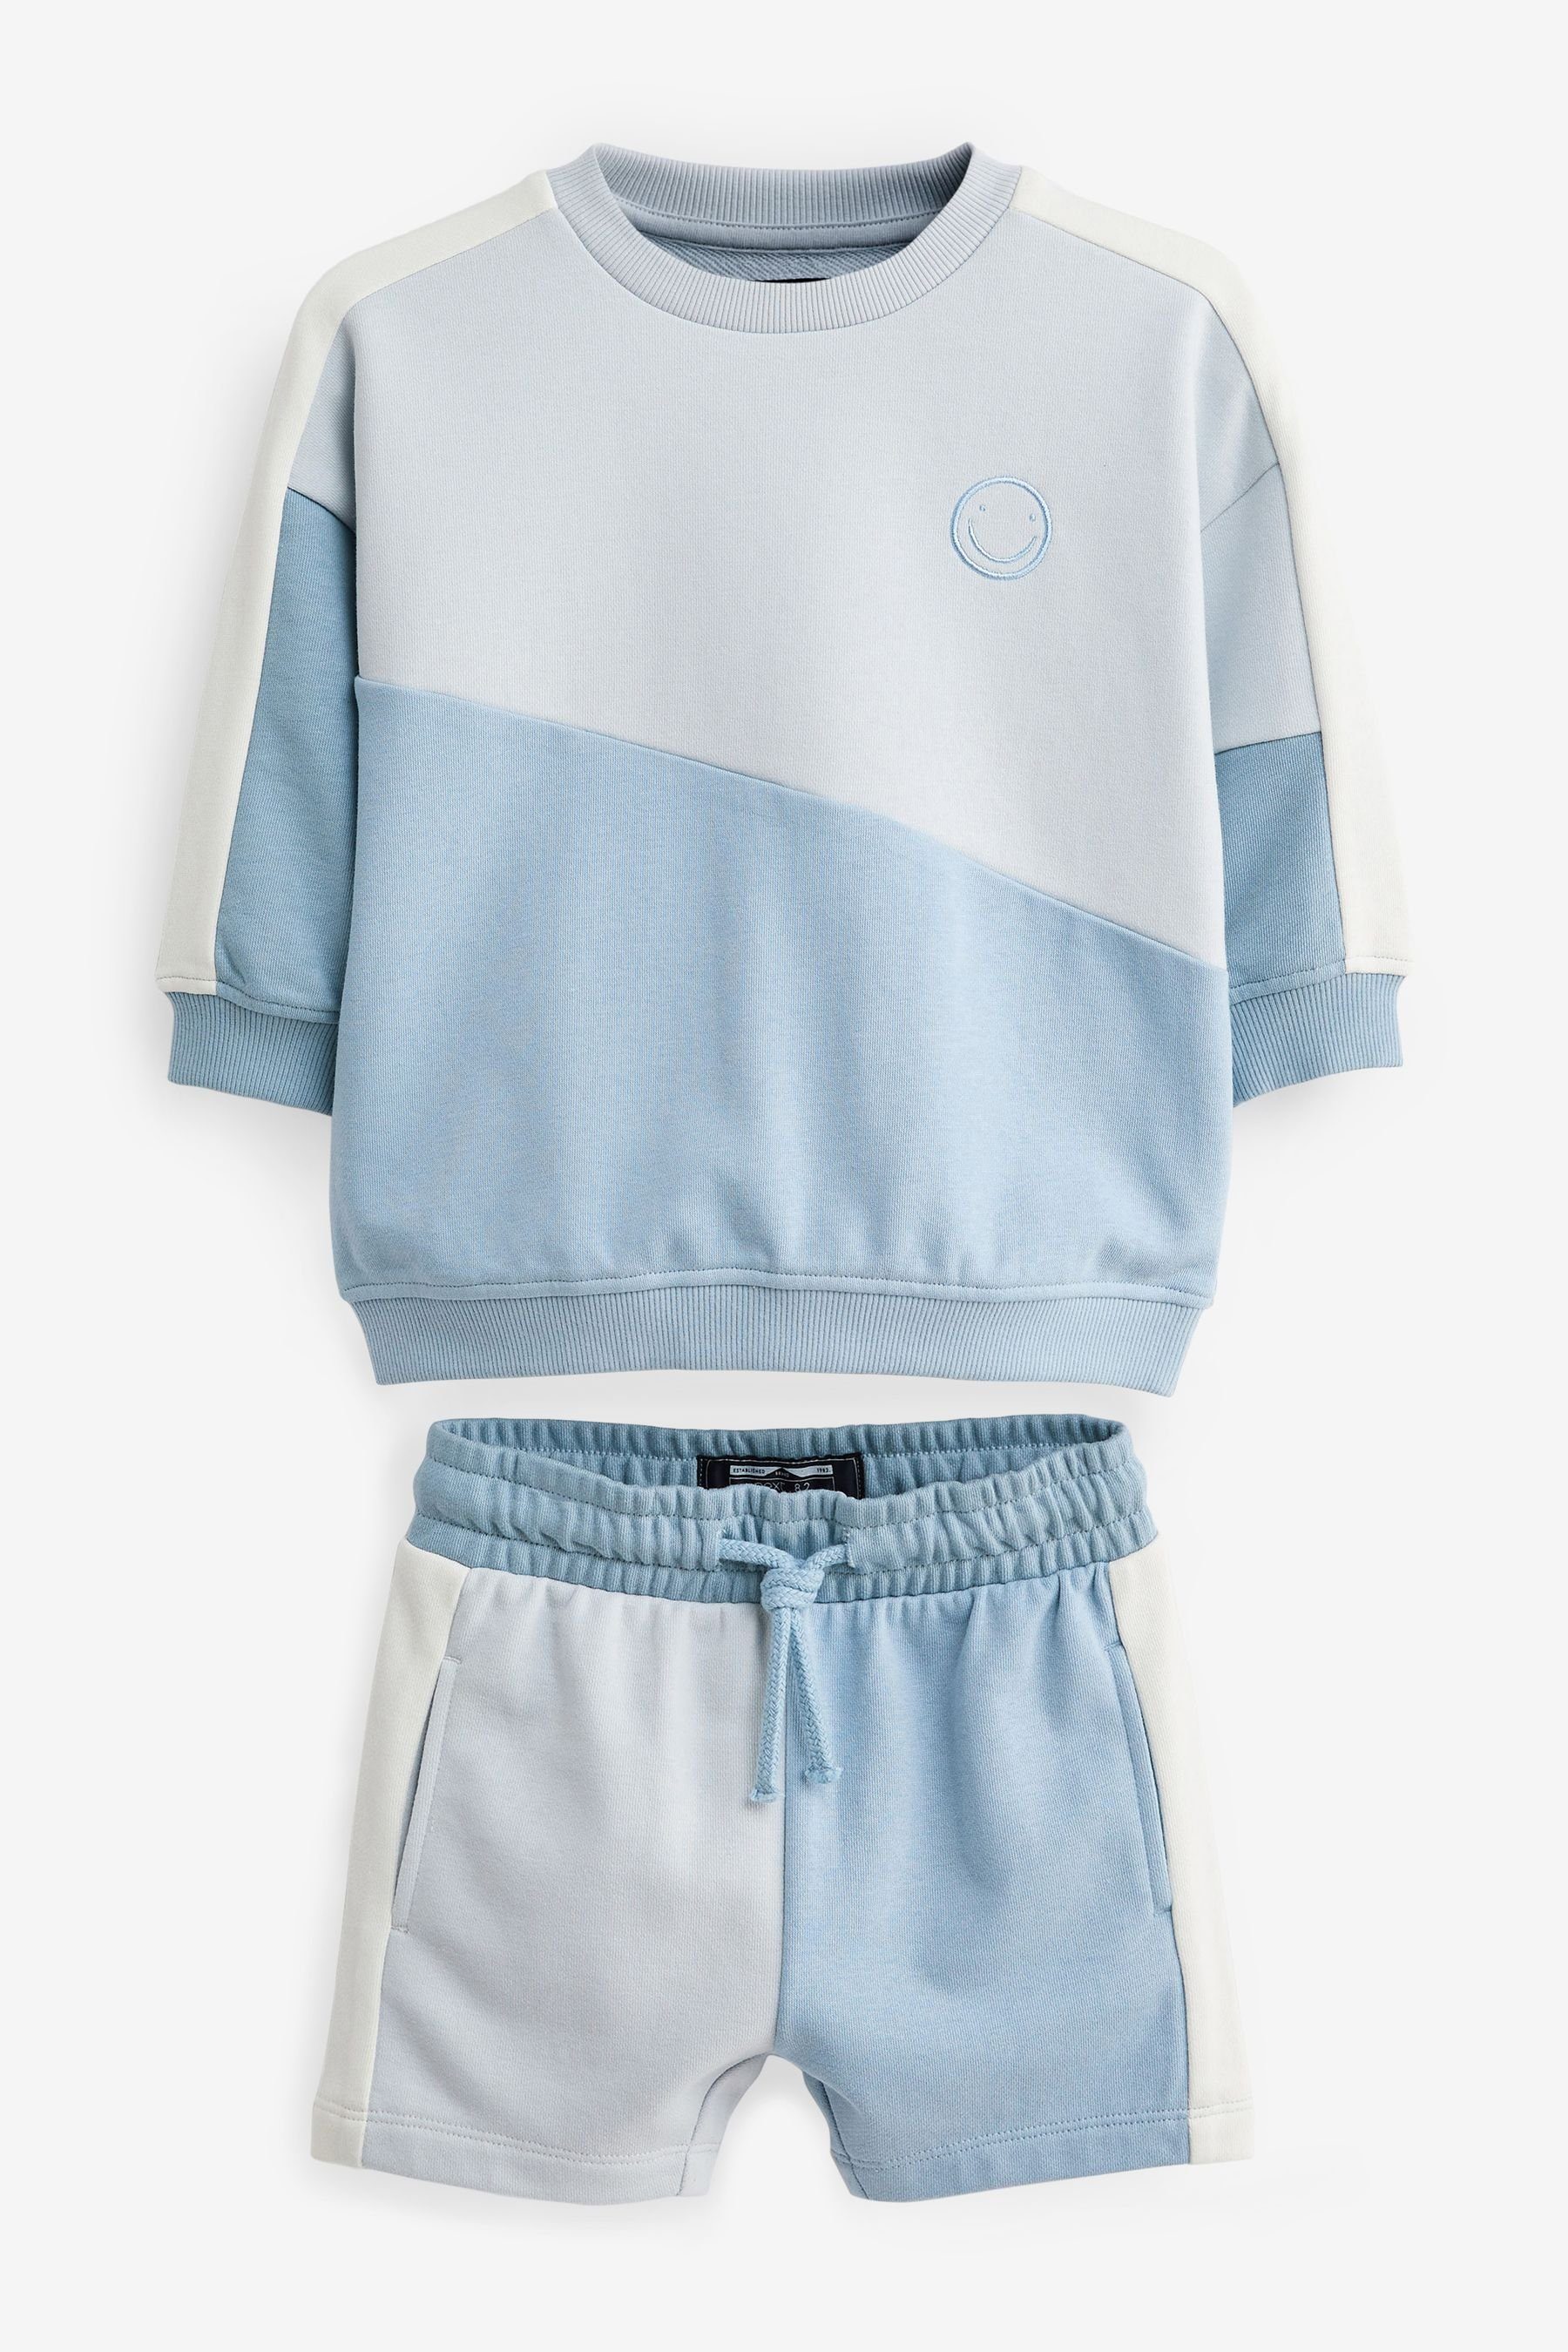 Next Sweatanzug Light Blue im (2-tlg) Set Blockfarben-Sweatshirt Shorts und